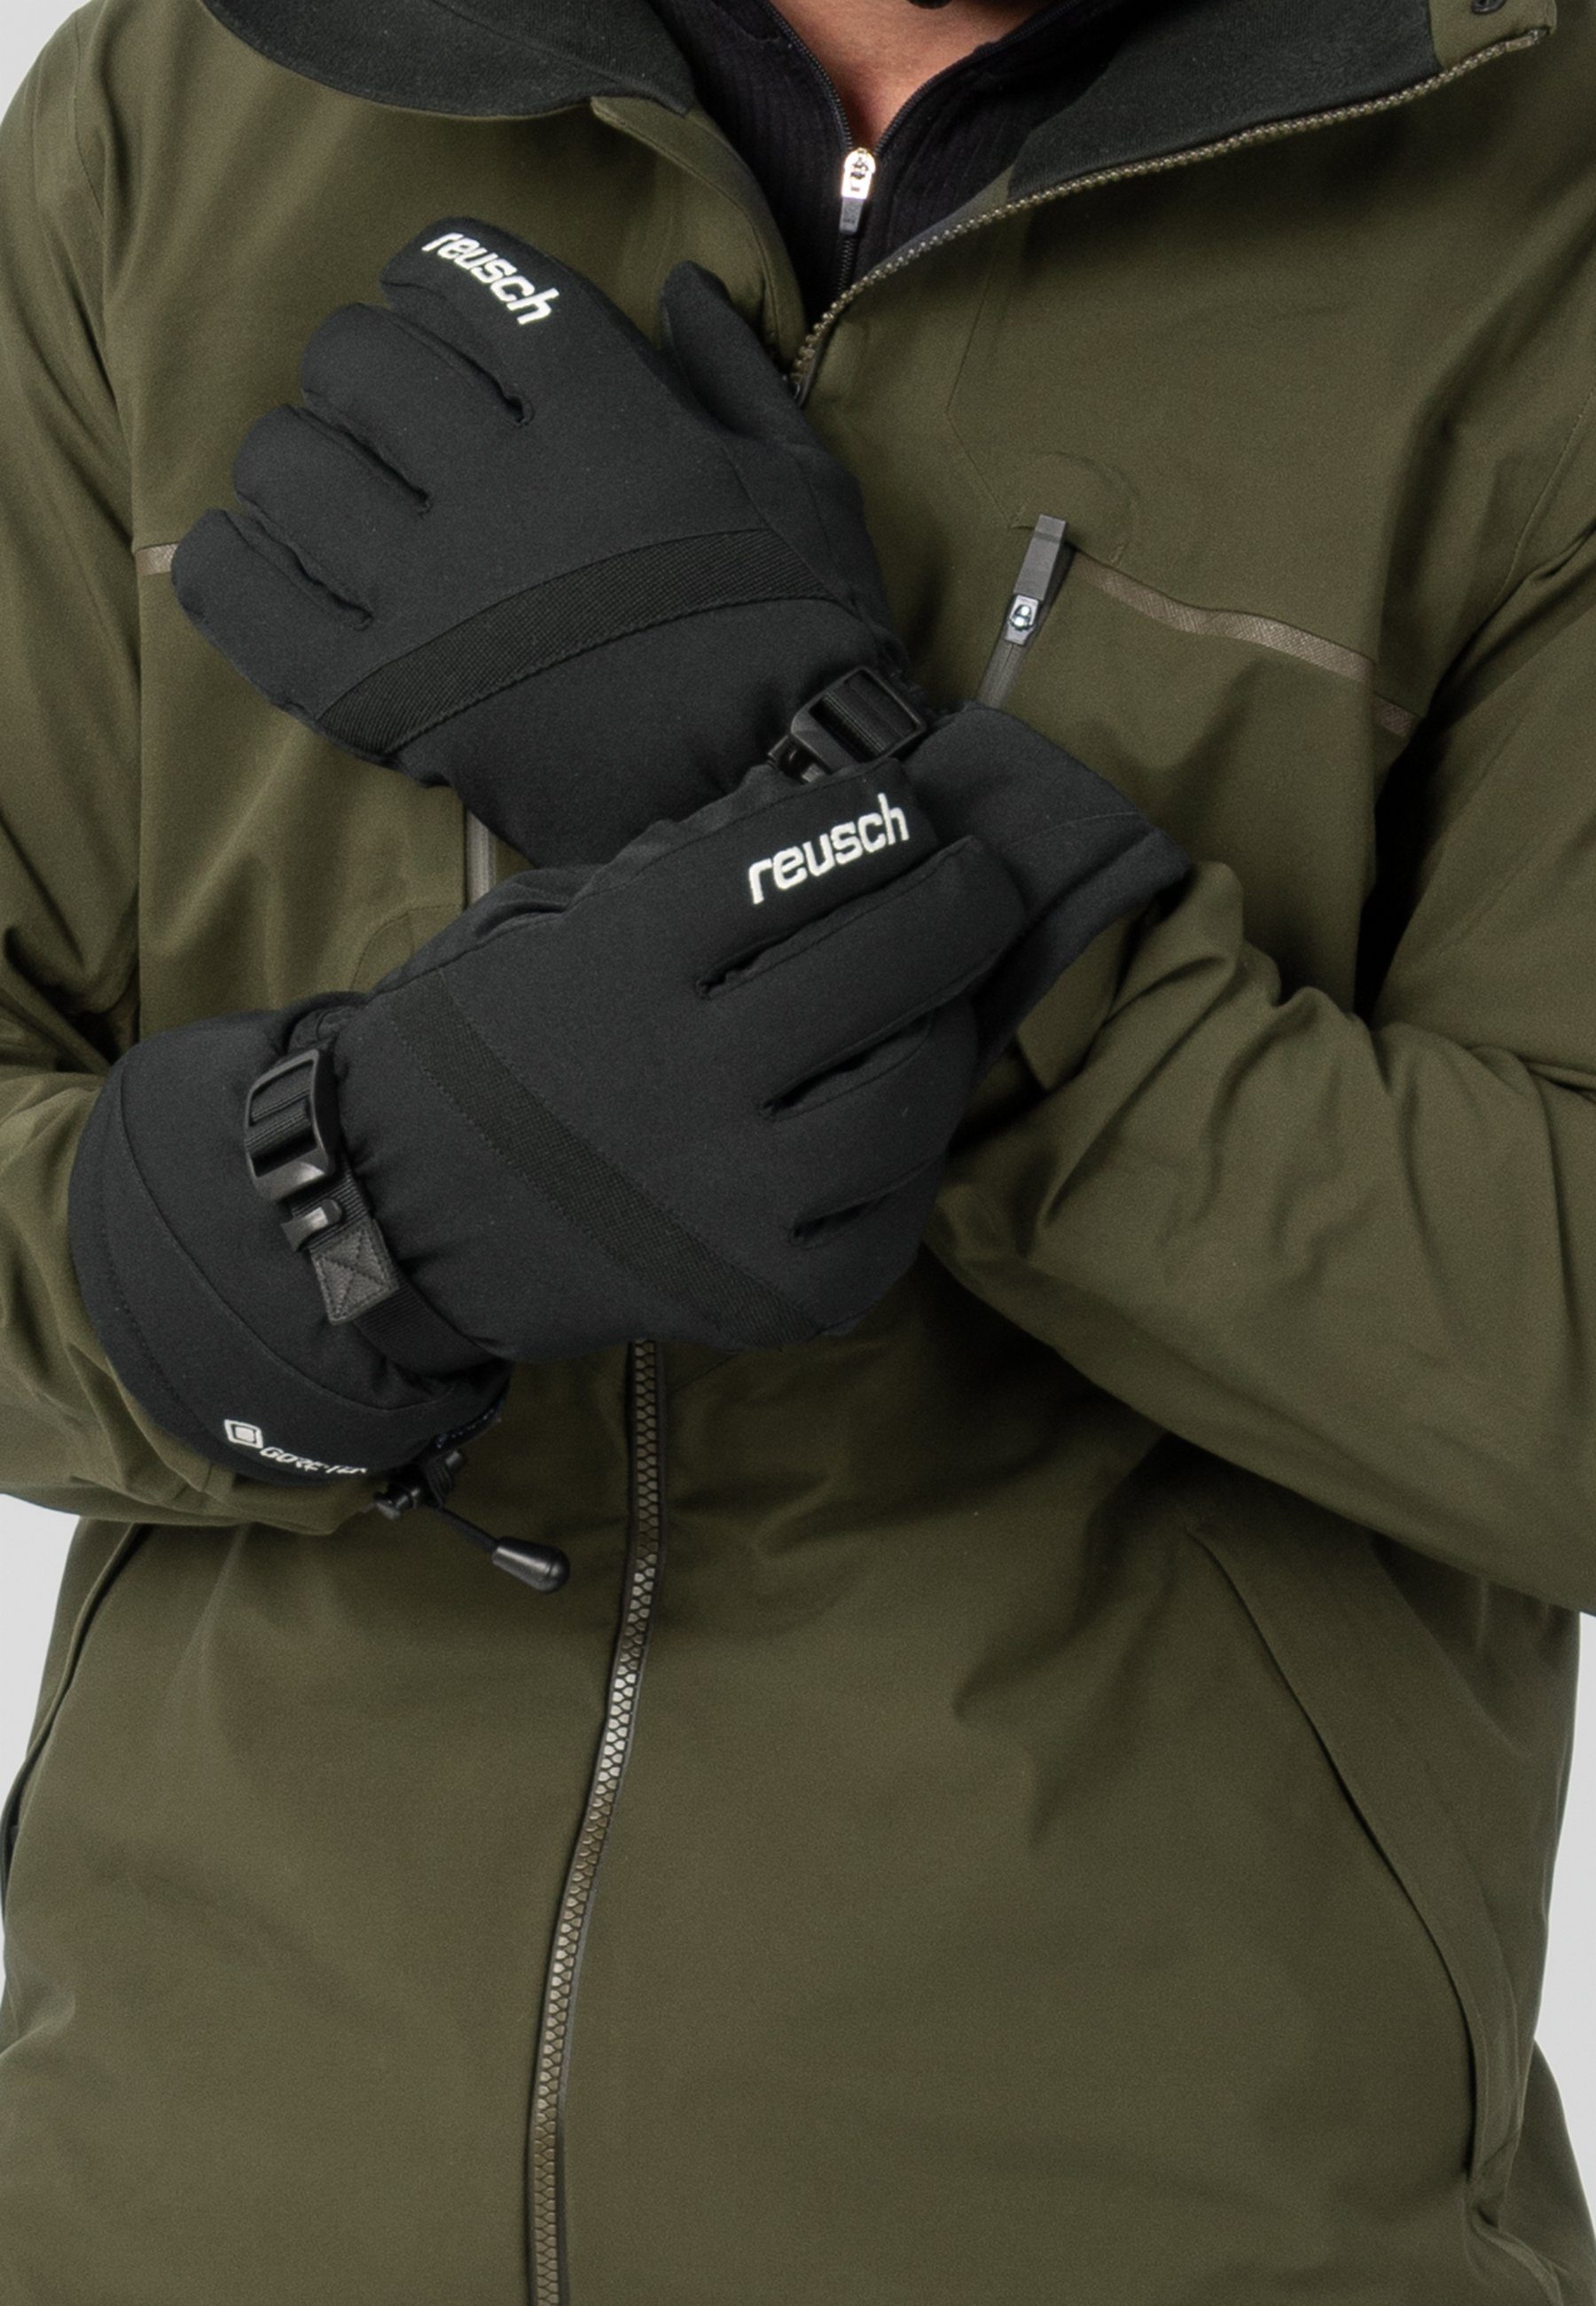 Reusch Skihandschuhe aus Warm atmungsaktivem Material wasserdichtem GORE-TEX Glove und Winter